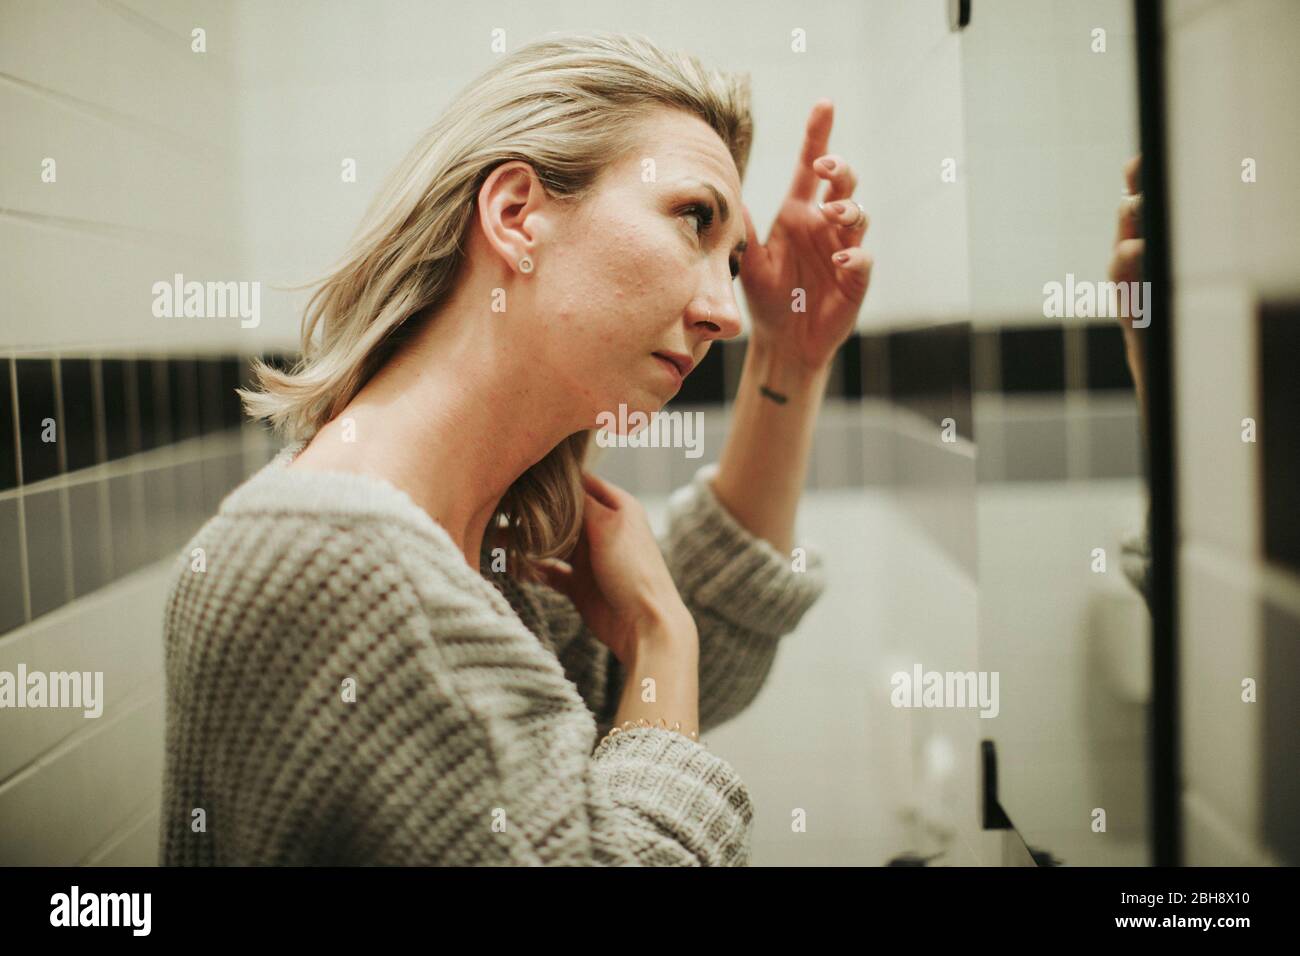 Frau im Badezimmer, betrachtet kritisch ihr Spiegelbild Foto Stock